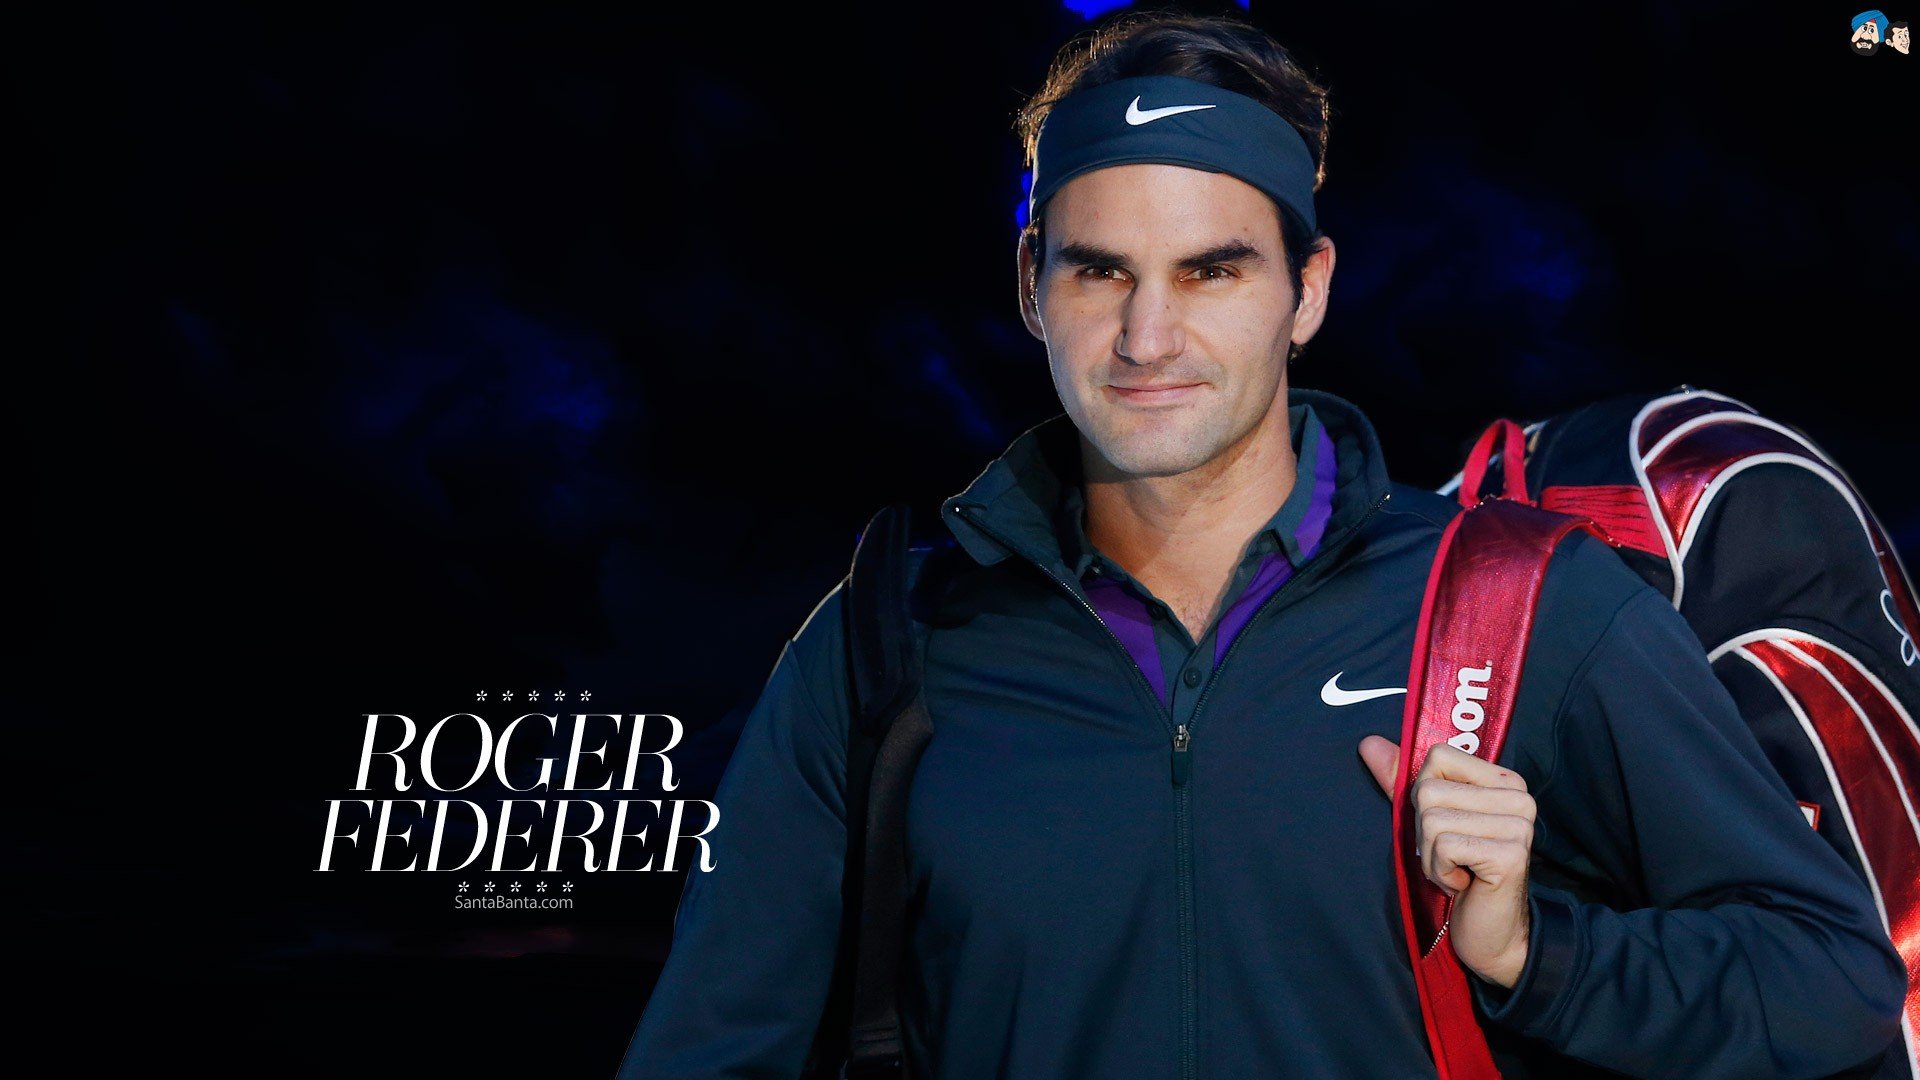 sports, Tennis, Roger, Federer, Tennis, Player Wallpaper